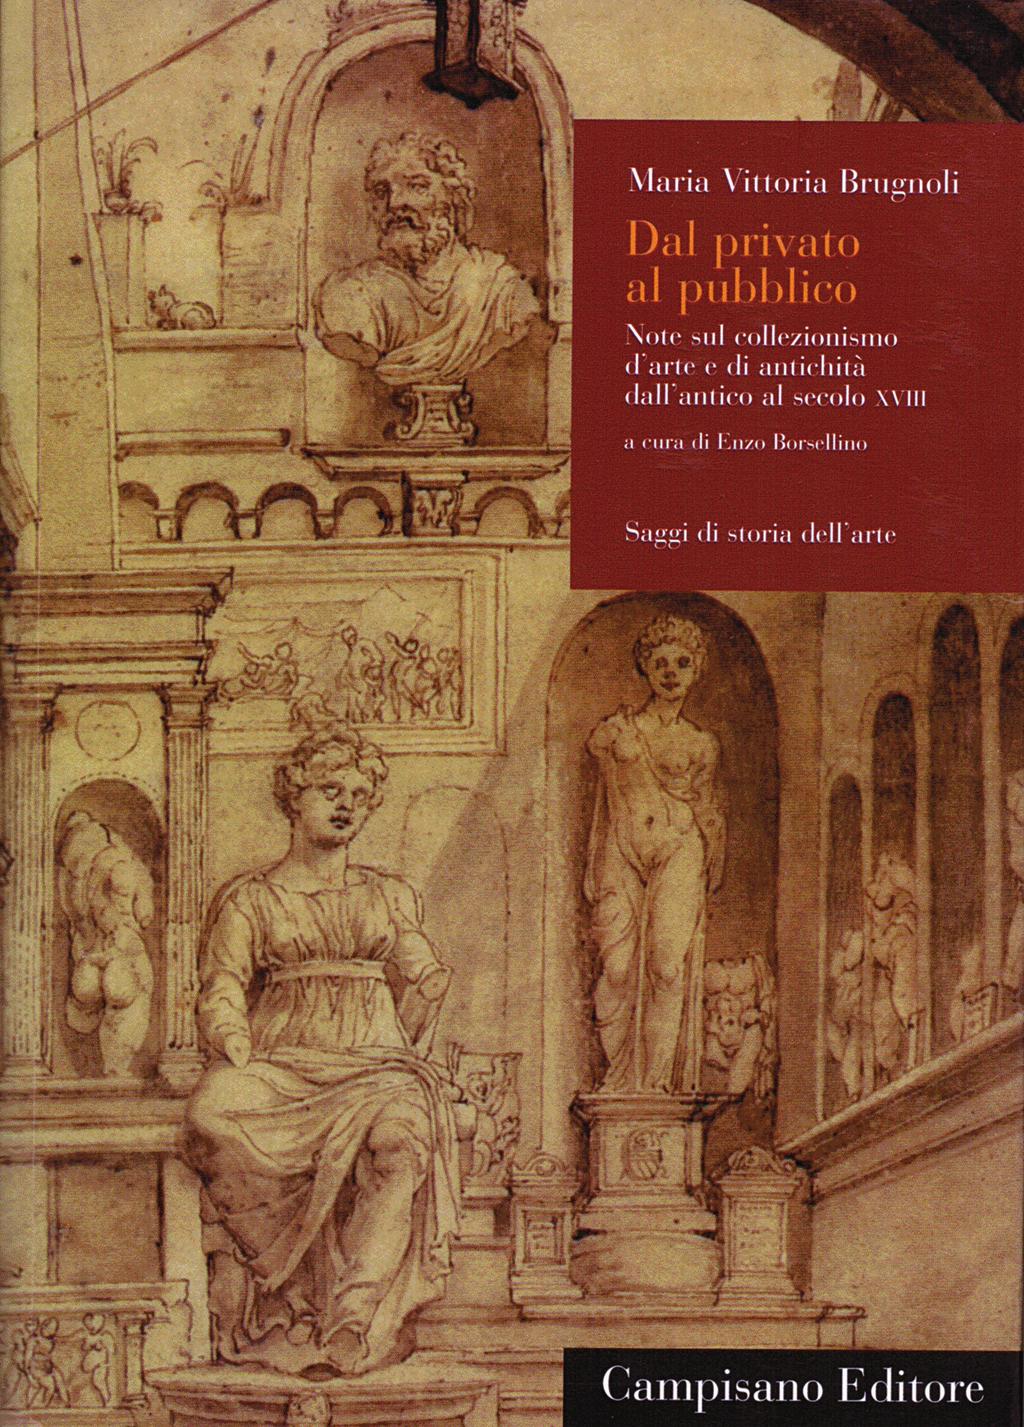 S. Selvaggi Fig. 1 Copertina del volume M.V. Brugnoli, Dal privato al pubblico.